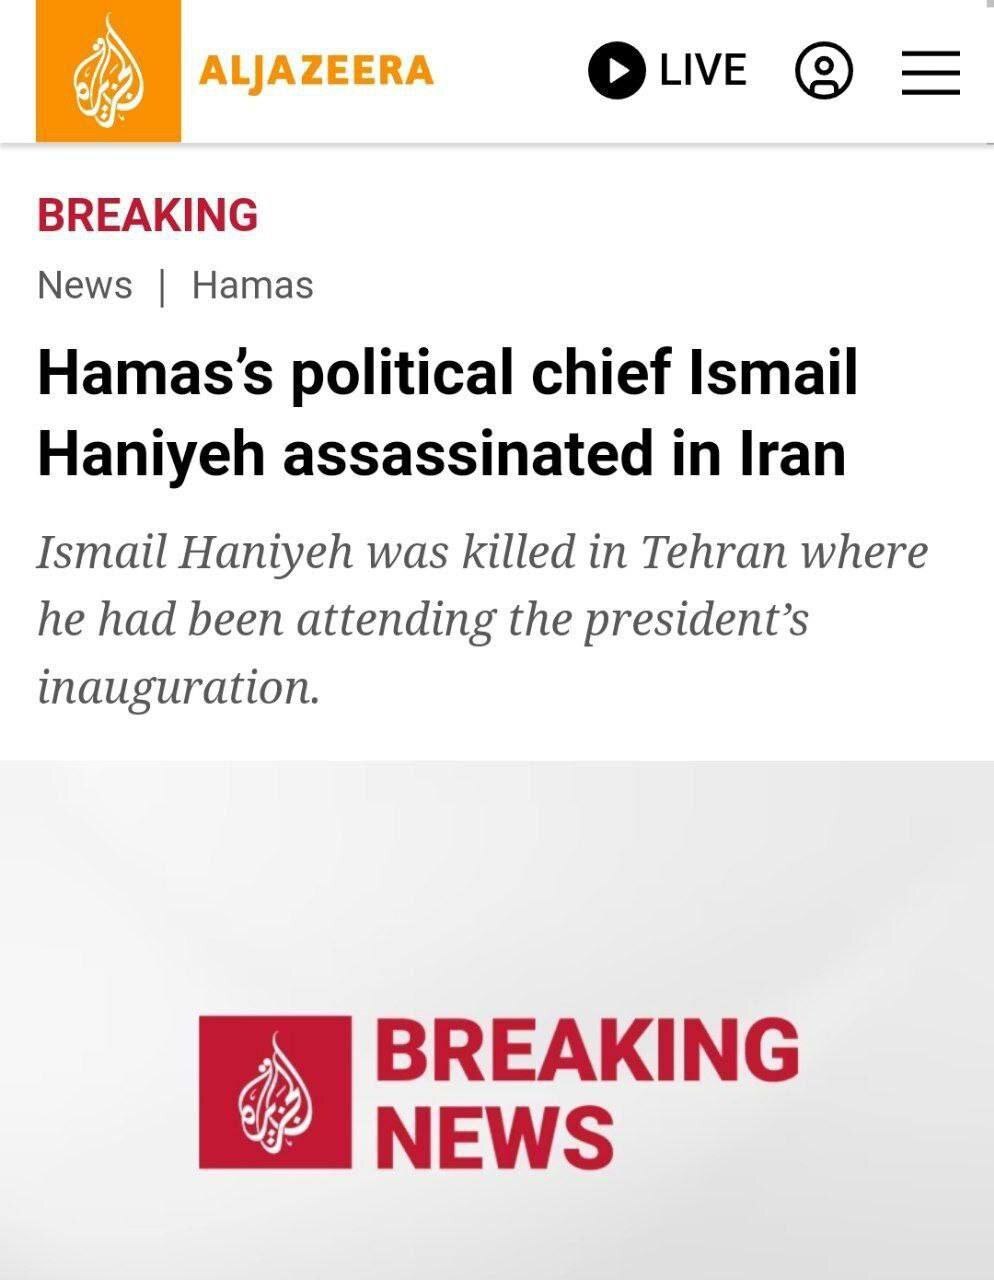 سپاه: اسماعیل هنیه در تهران به شهادت رسید/ واکنش کاخ سفید